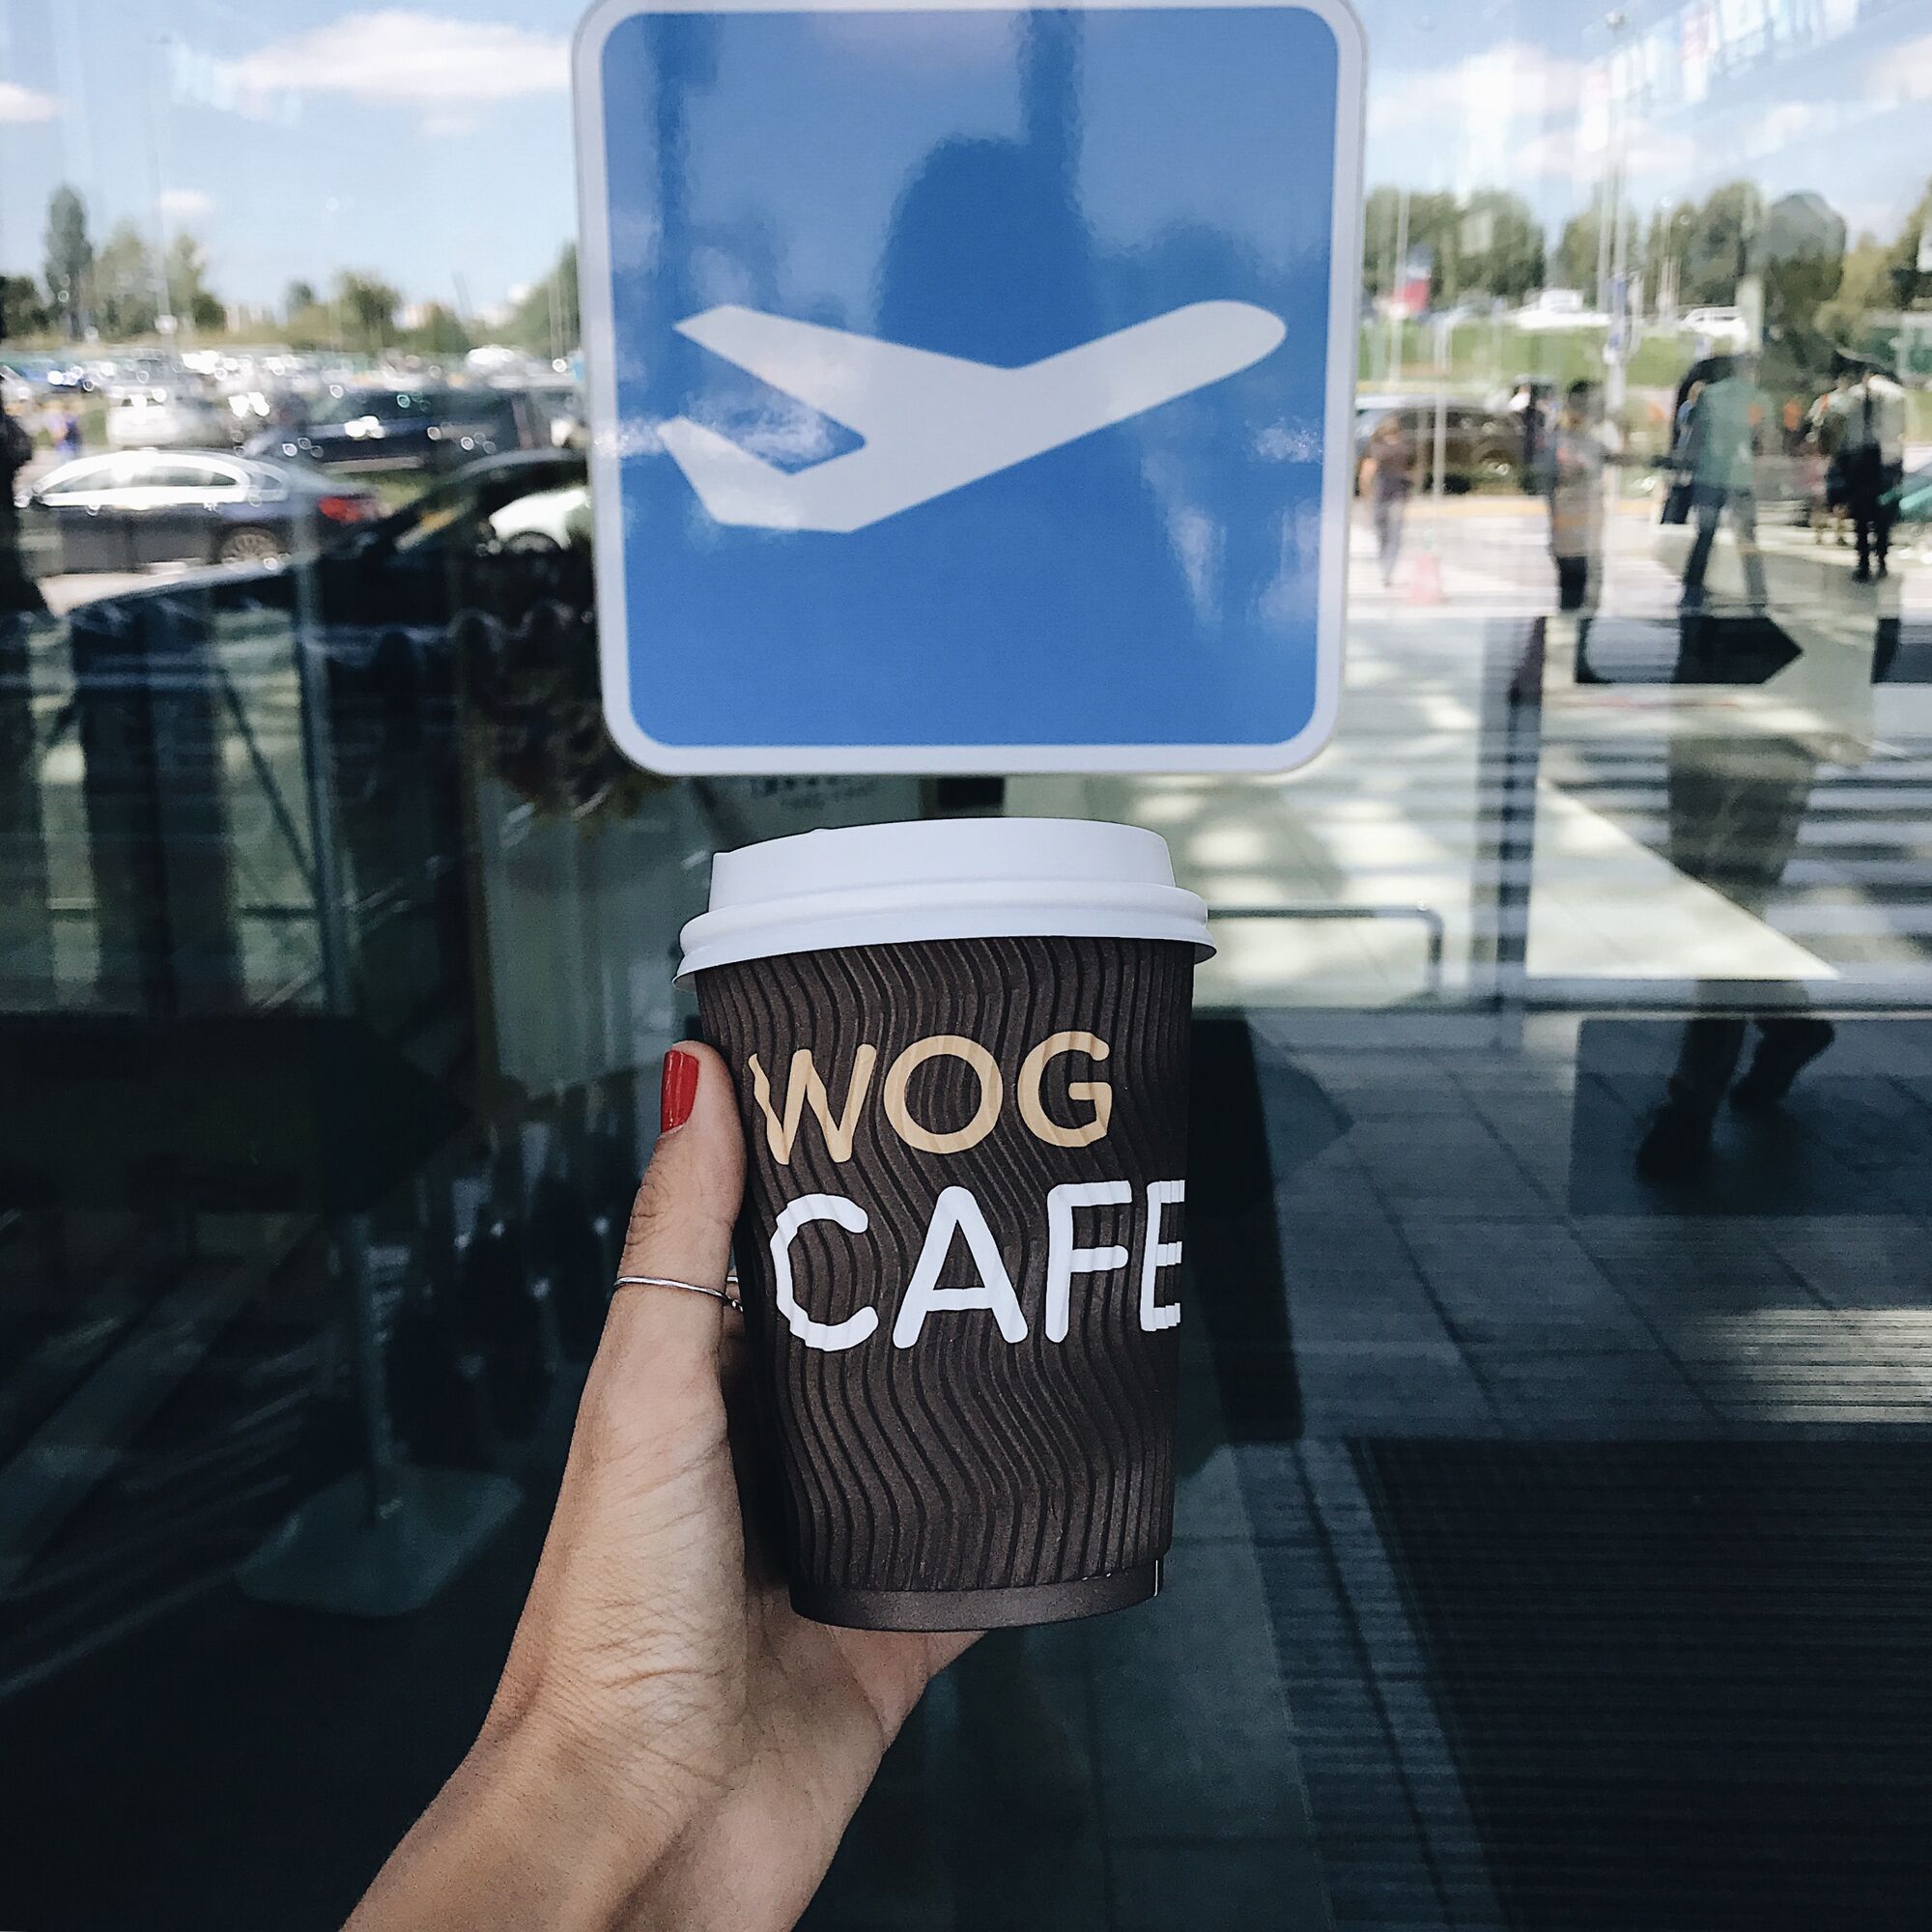 WOG CAFE откроется в аэропорту "Львов": названы сроки